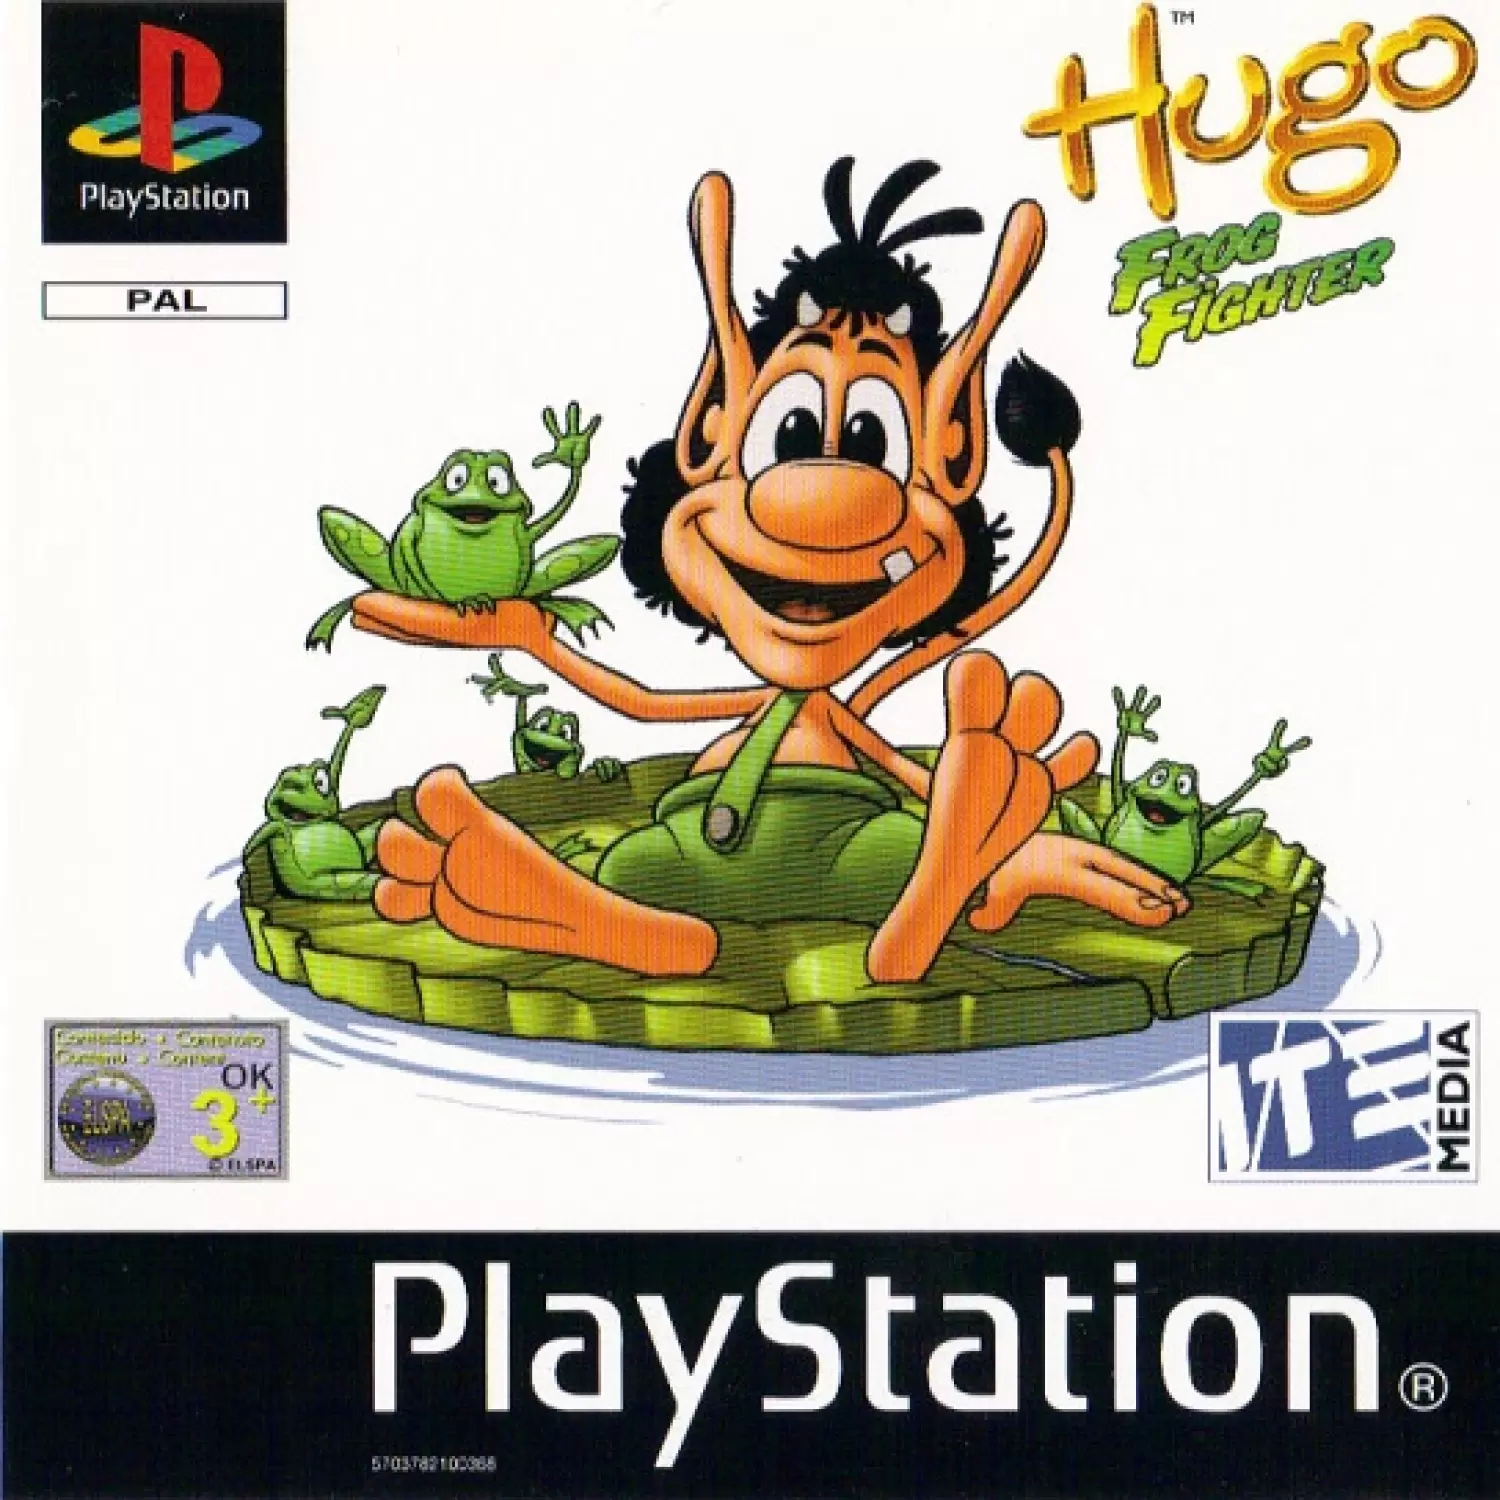 Playstation games - Hugo Frog Fighter